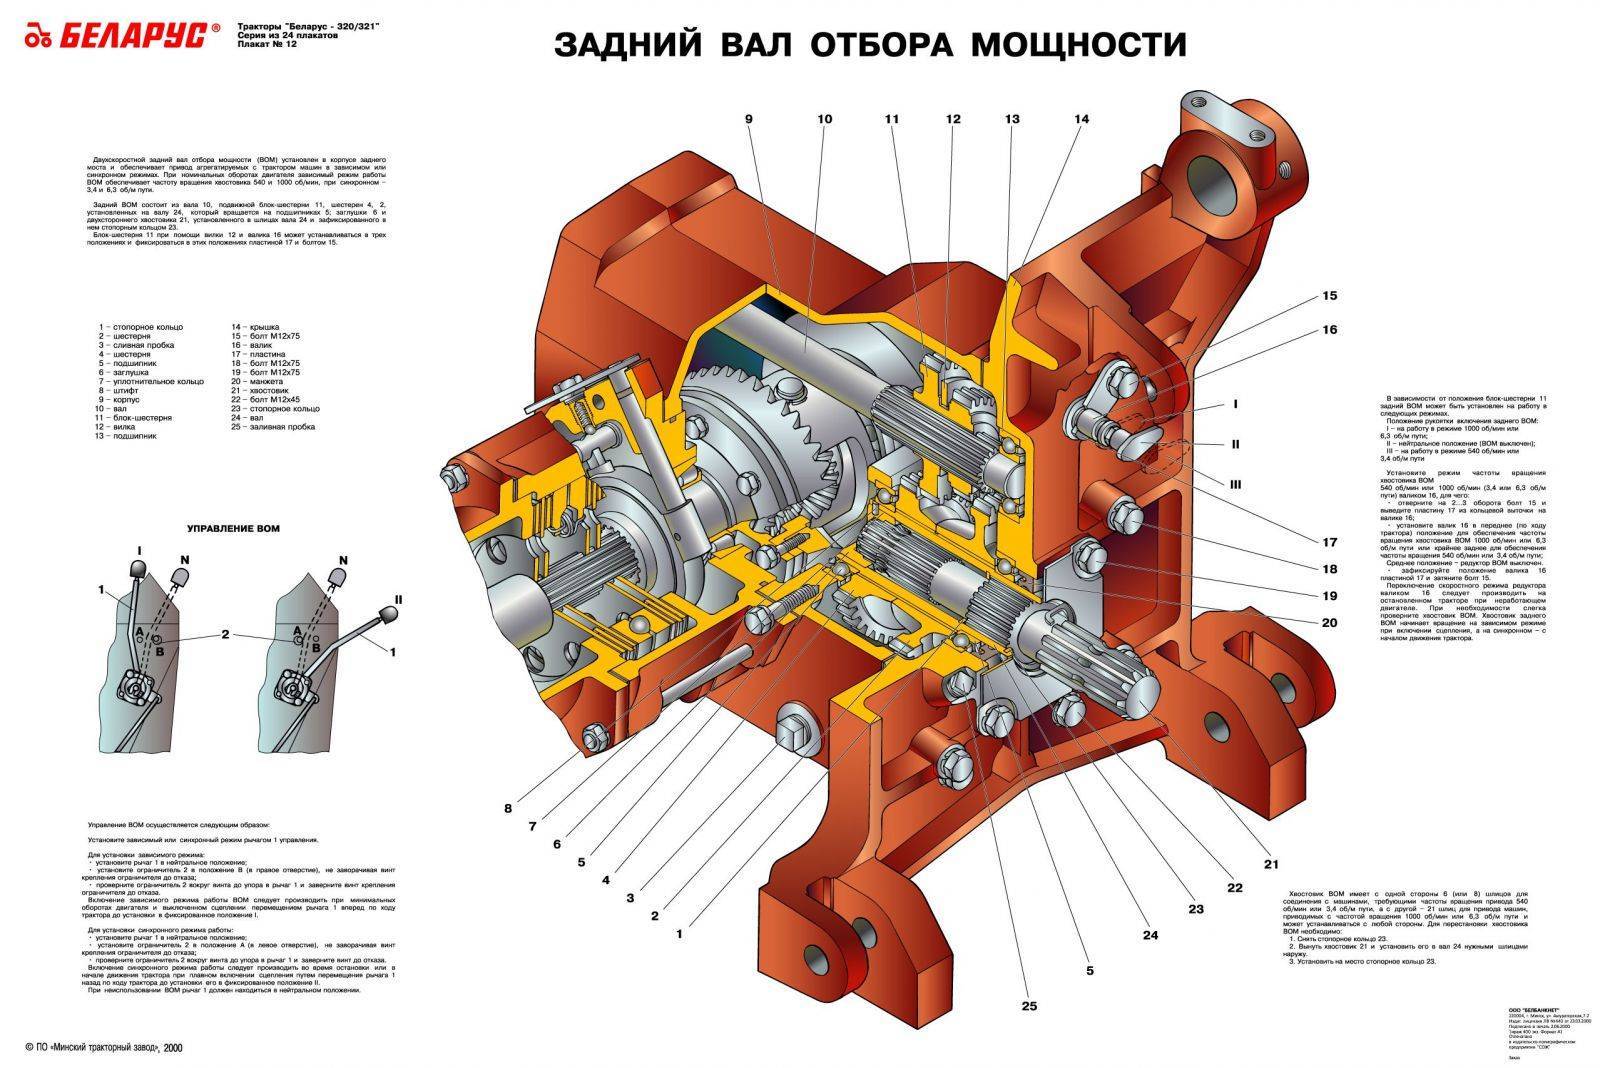 Обслуживание и ремонт вом мтз-80(82)